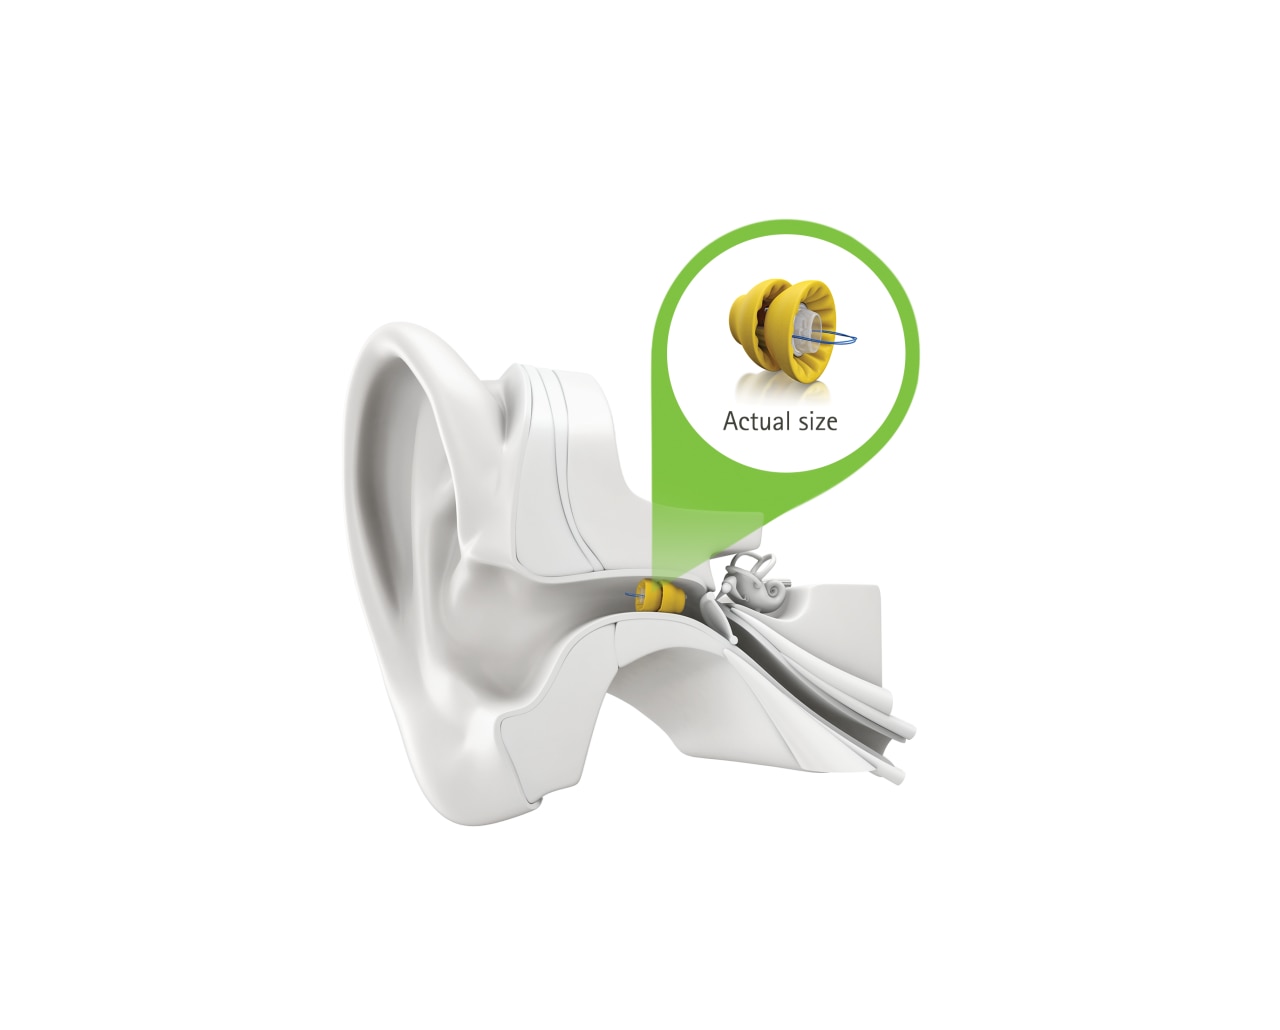 Lyric actual size Phonak hearing aid